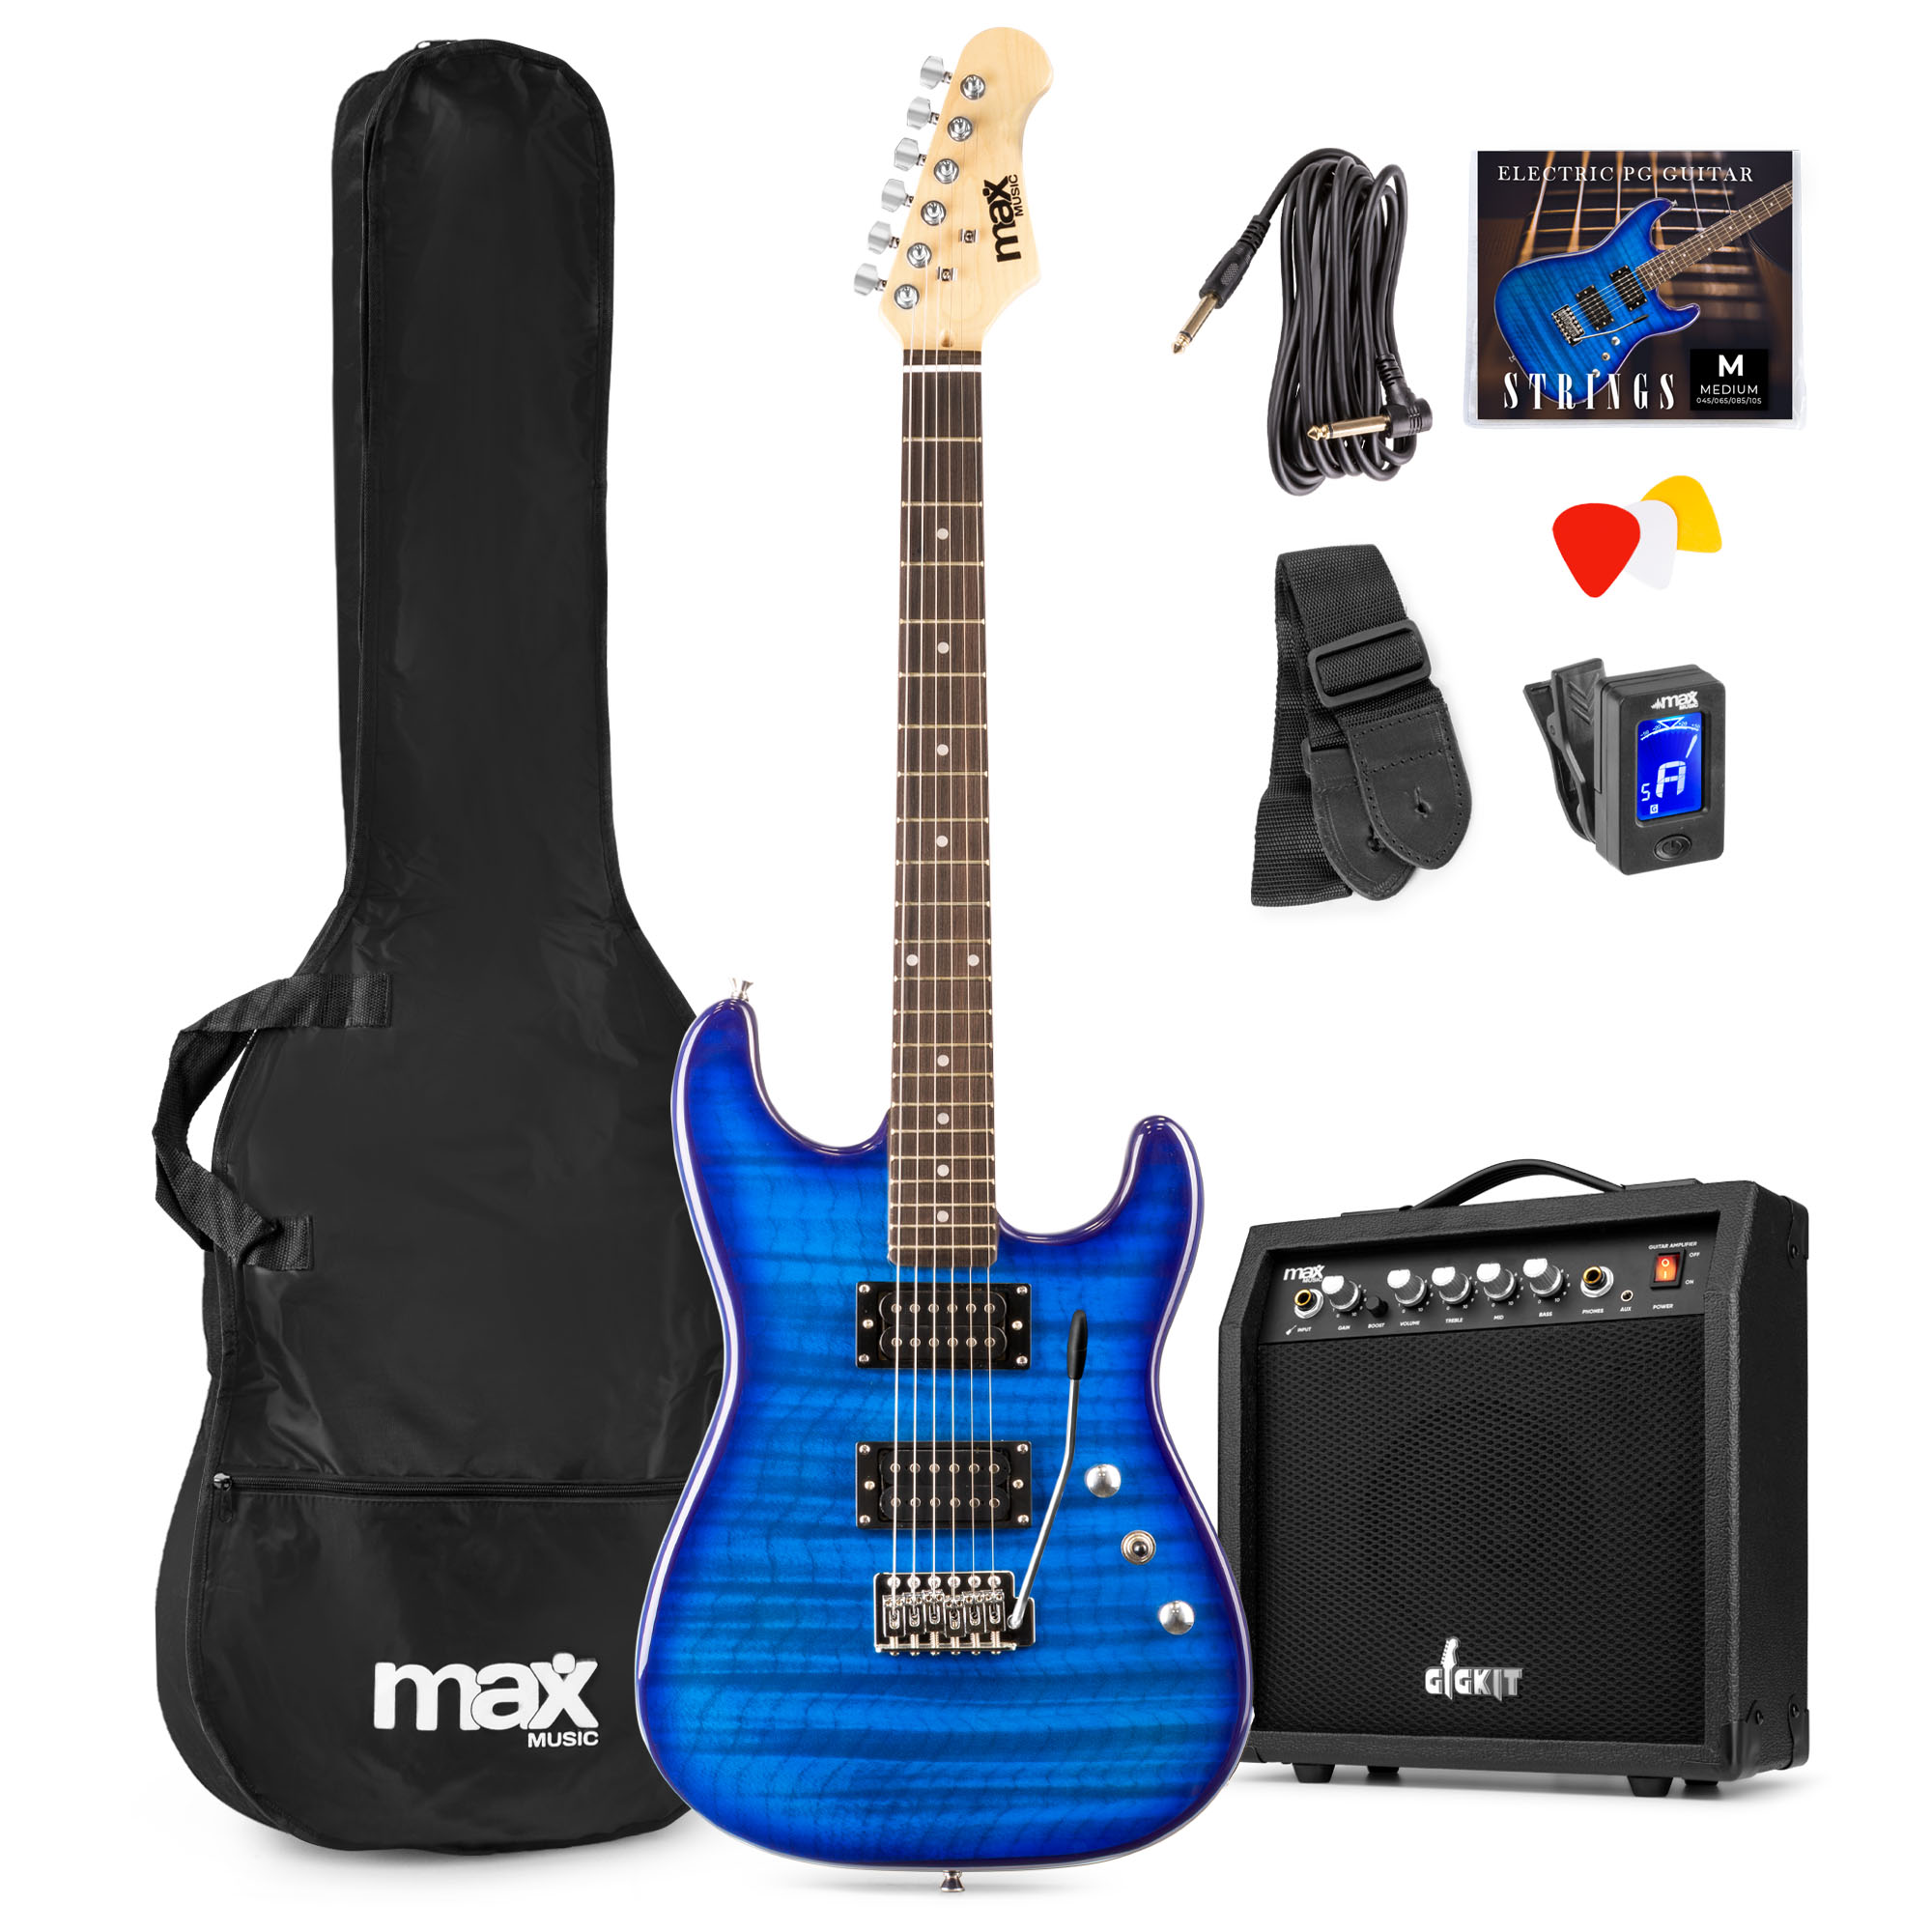 Max GigKit PG Elektrische gitaar met 40 Watt versterker en accessoires - Donker blauw